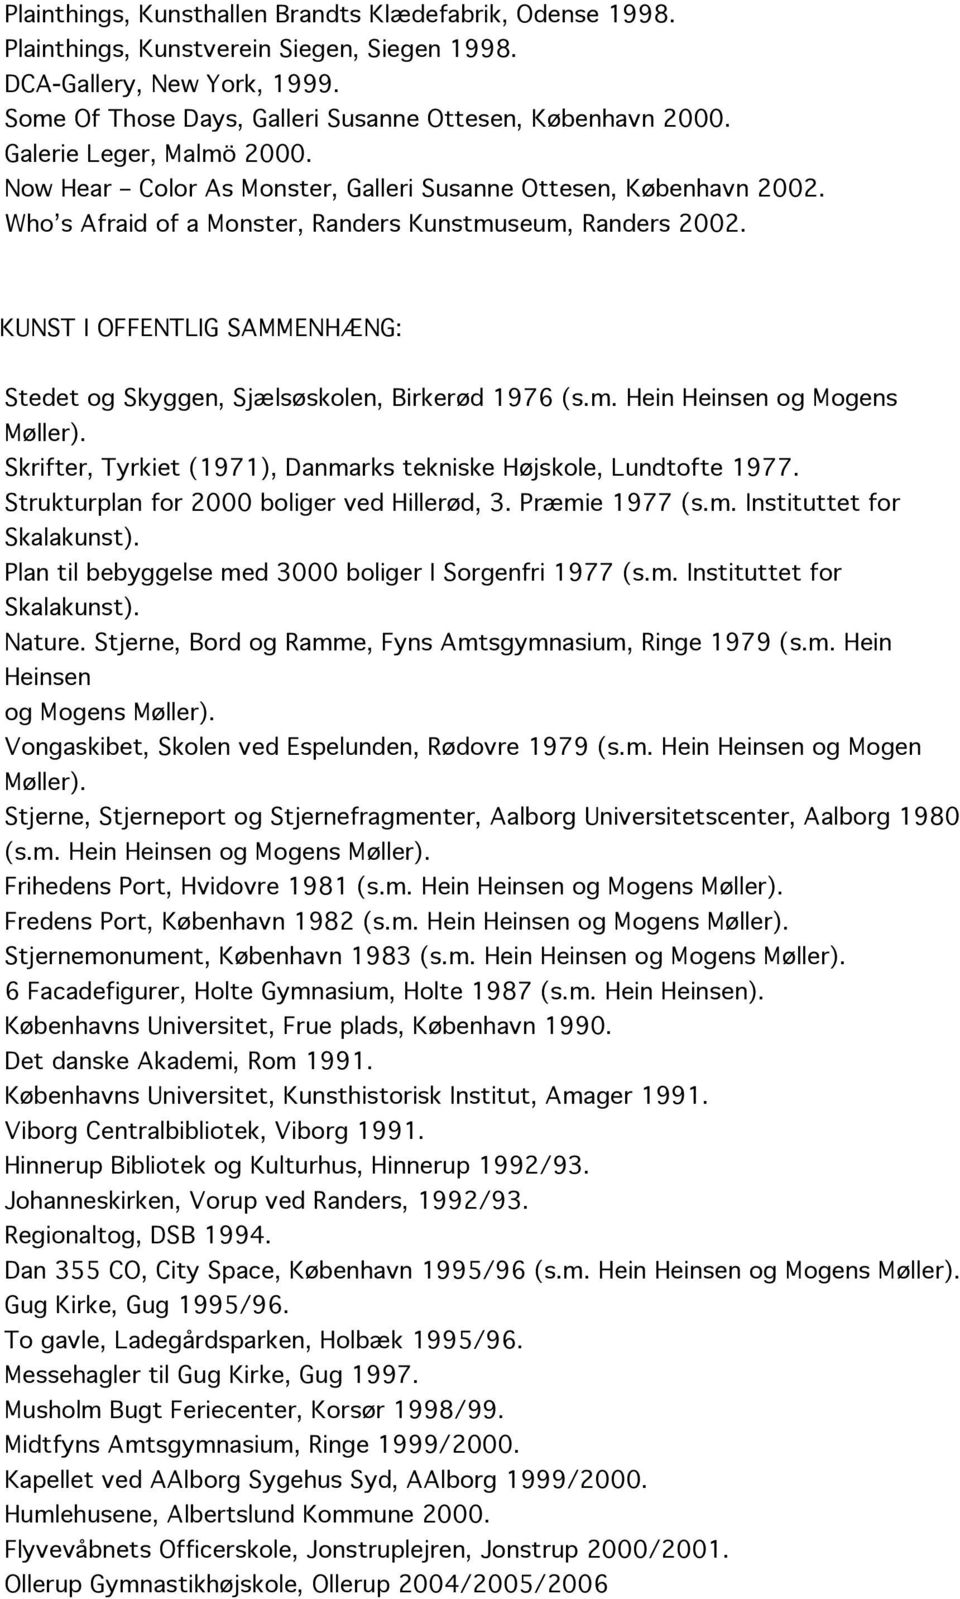 KUNST I OFFENTLIG SAMMENHÆNG: Stedet og Skyggen, Sjælsøskolen, Birkerød 1976 (s.m. Hein Heinsen og Mogens Møller). Skrifter, Tyrkiet (1971), Danmarks tekniske Højskole, Lundtofte 1977.